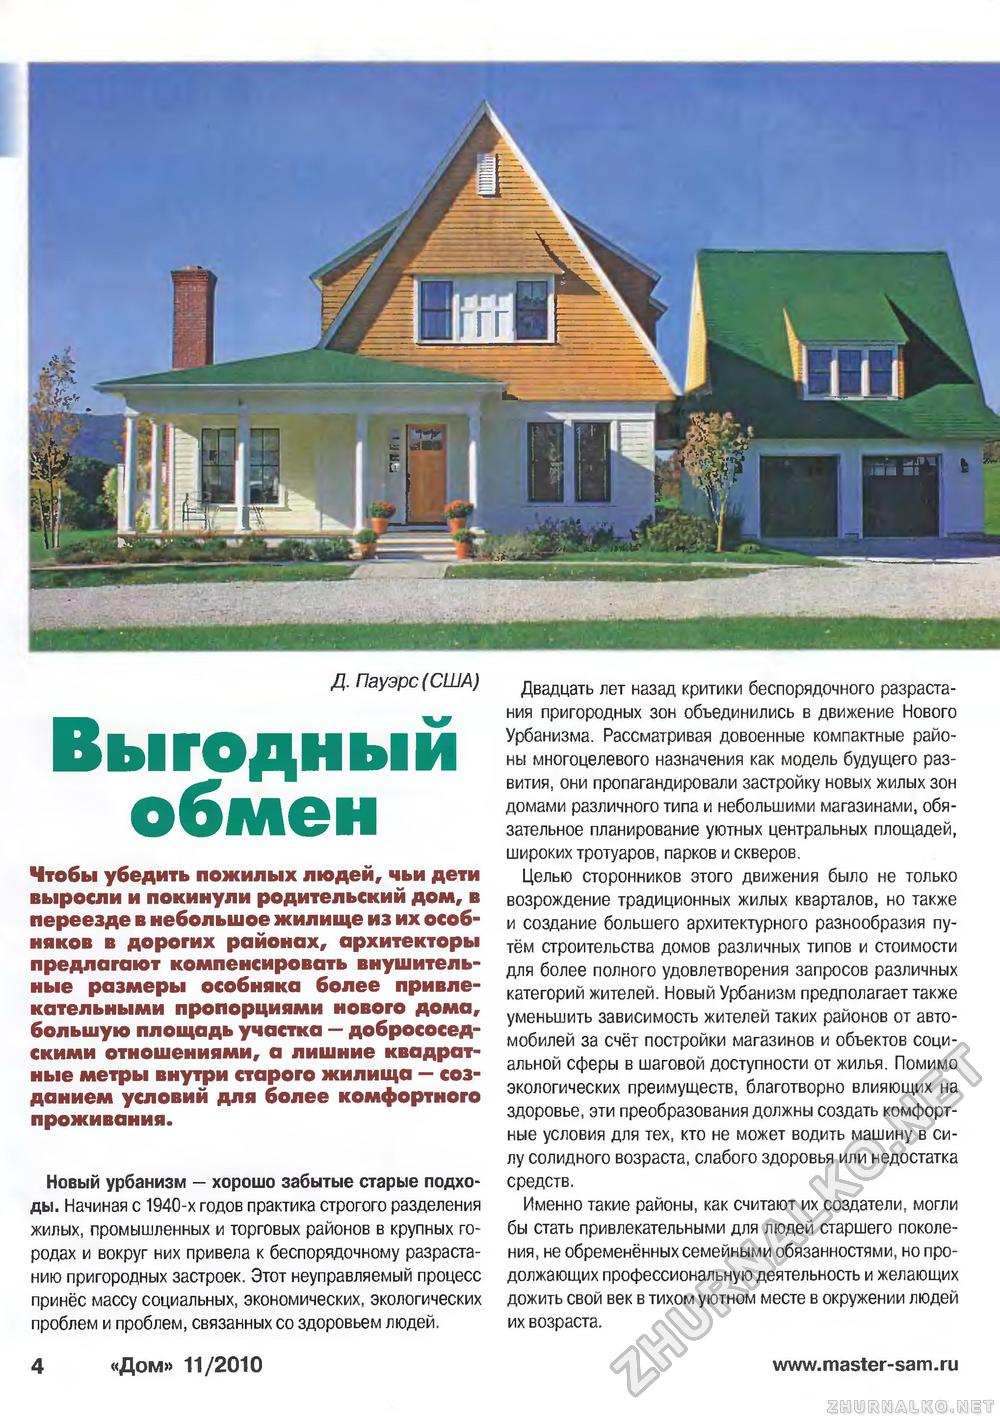 Дом 2010-11, страница 4